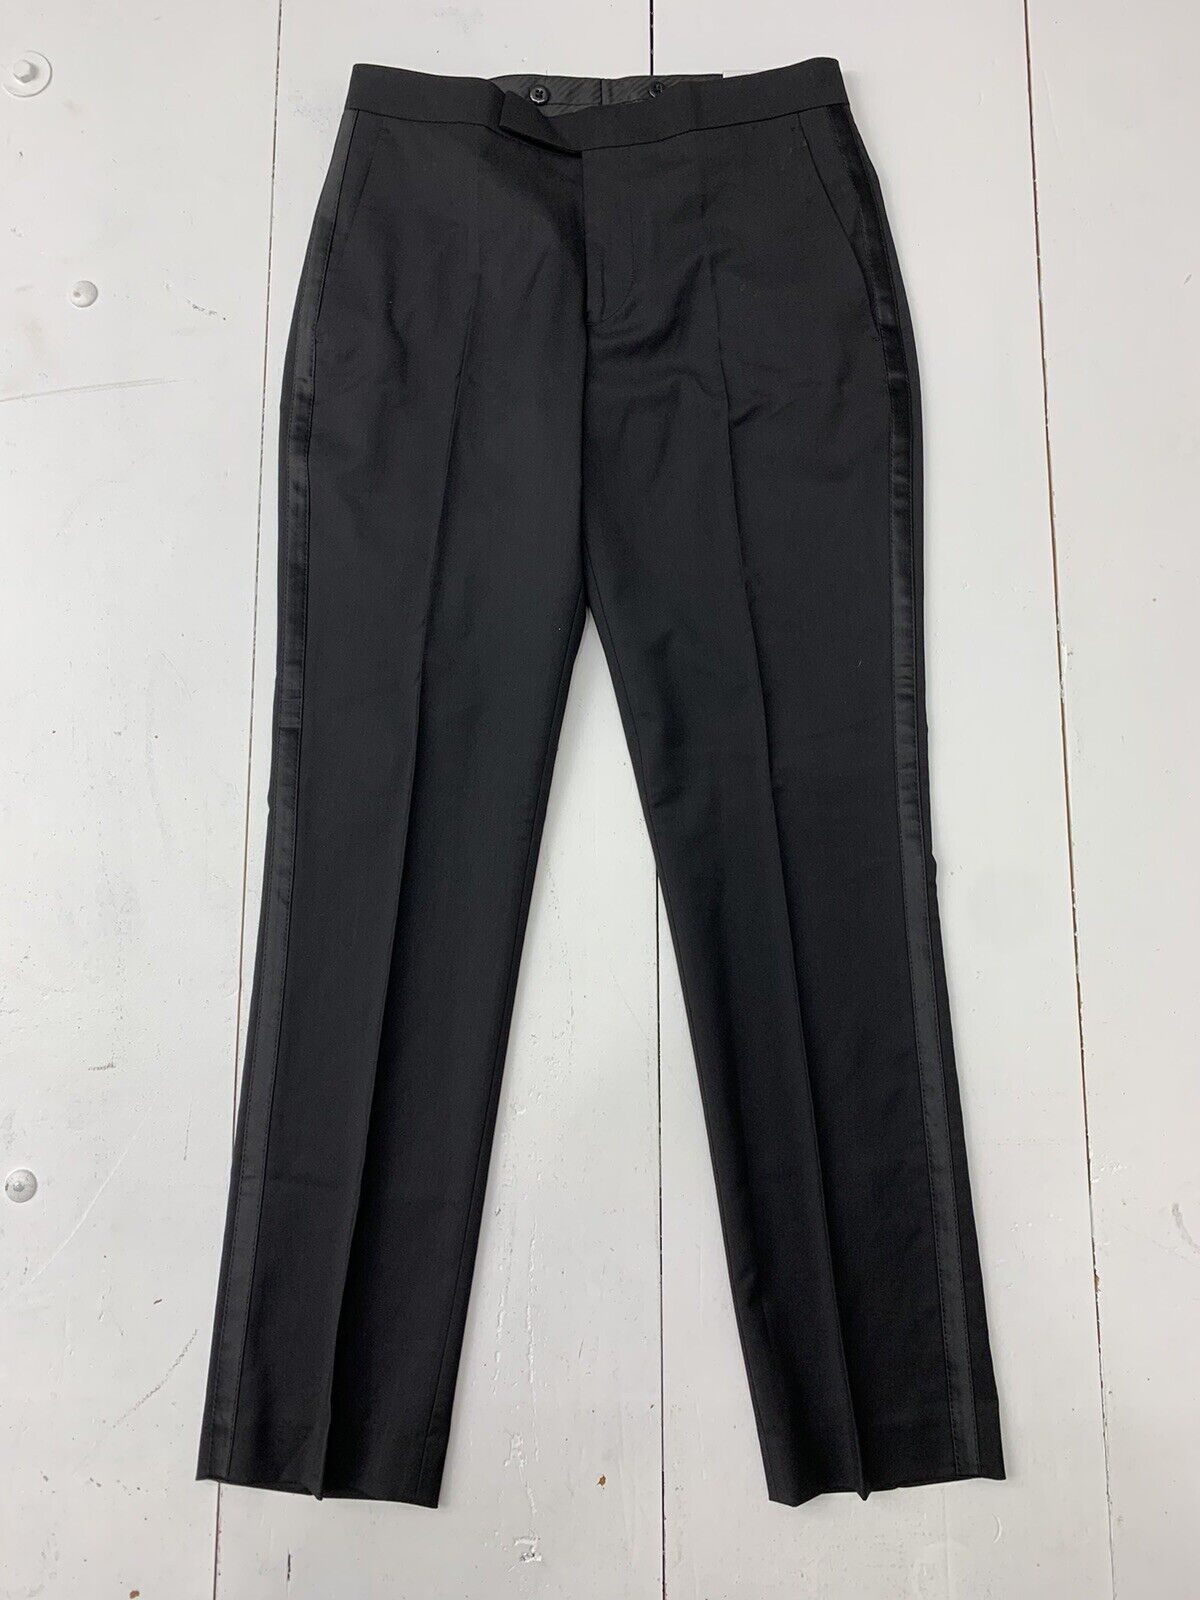 Men's Black Trousers | Suit Direct